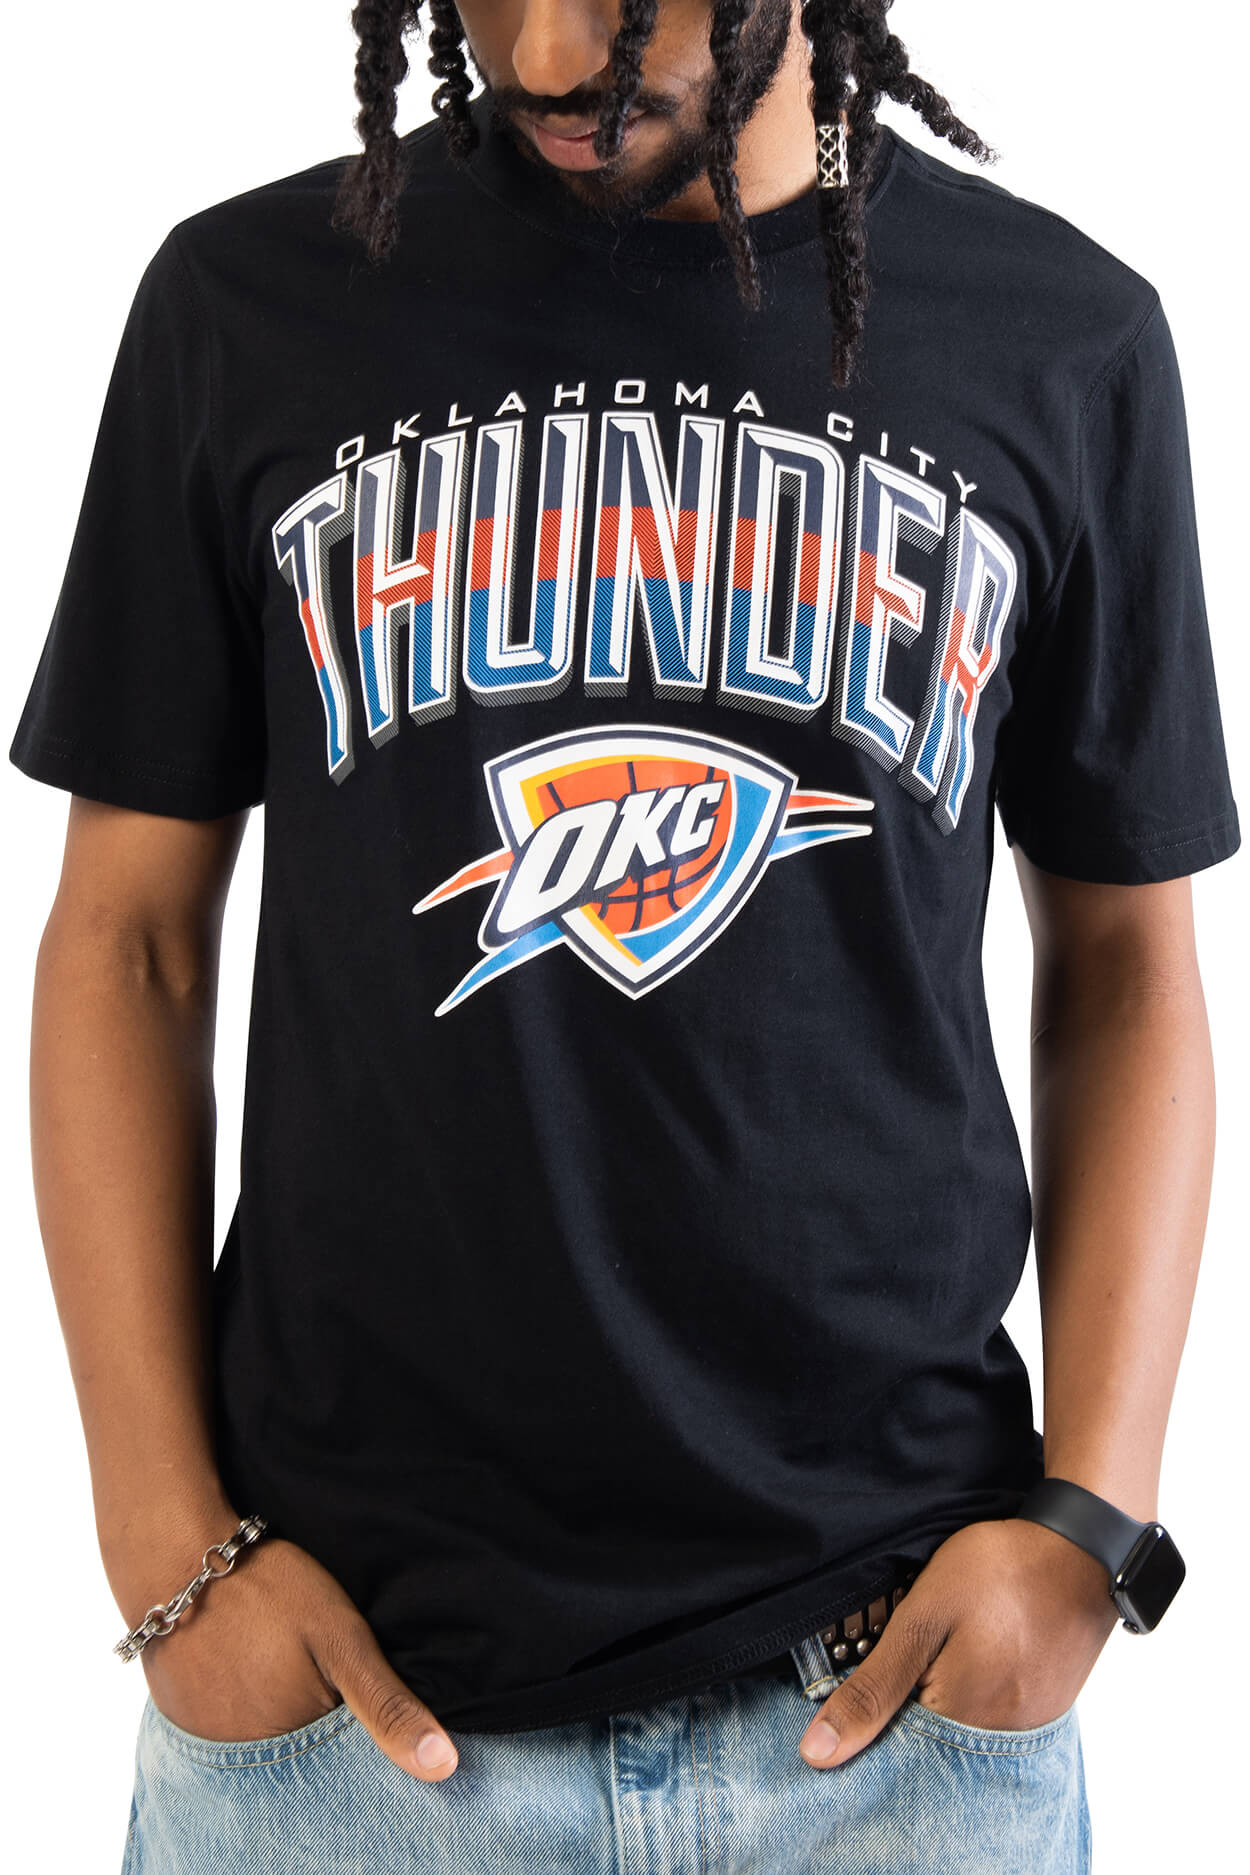 NBA Oklahoma City Thunder Men's Short Sleeve Tee|Oklahoma City Thunder